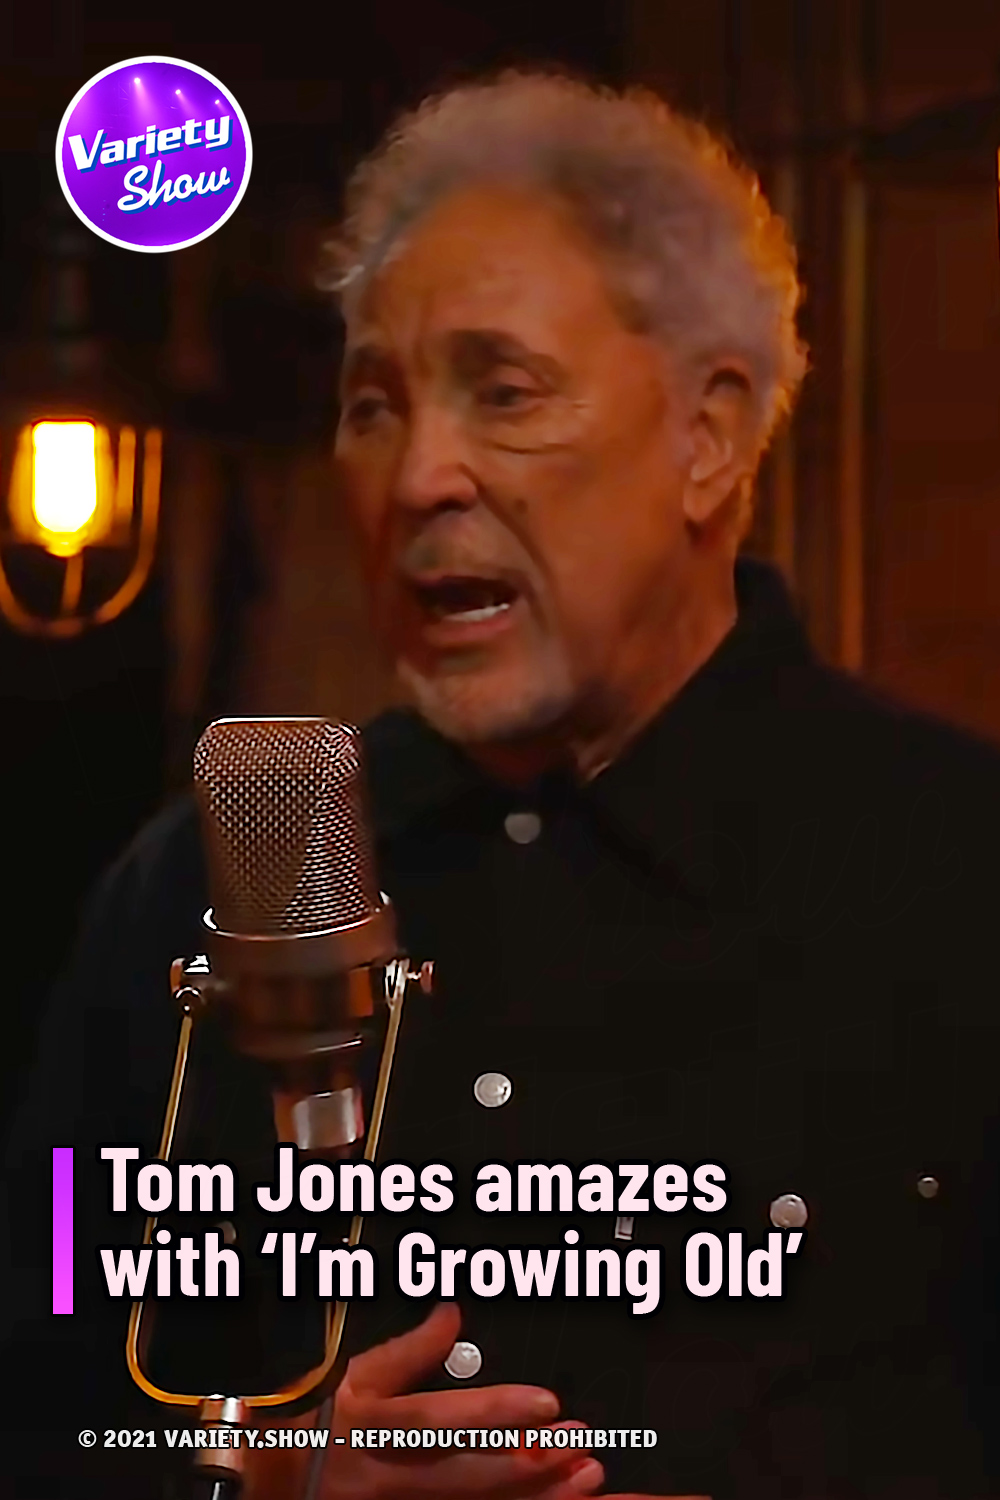 Tom Jones amazes with ‘I’m Growing Old’